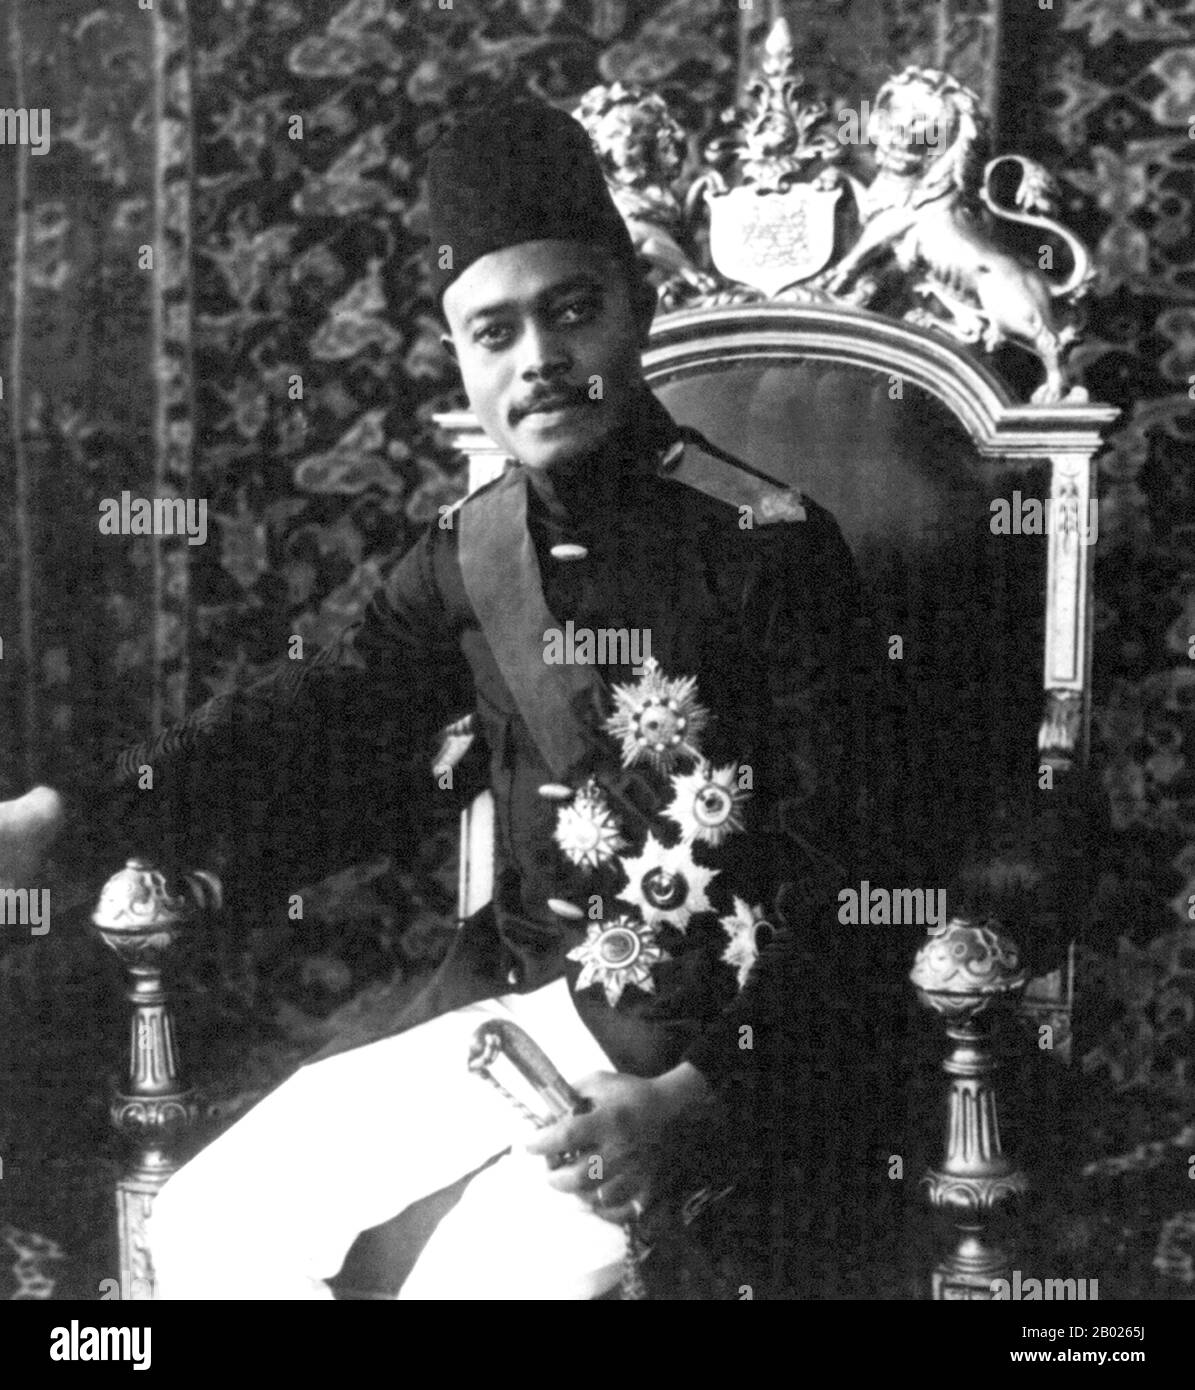 Sayyid Ali bin Hamud Al-Bussaid (7 juin 1884 – 20 décembre 1918) (arabe : علي بن حمود البوسعيد‎) était le huitième sultan de Zanzibar. Ali a gouverné Zanzibar du 20 juillet 1902 au 9 décembre 1911, ayant succédé au trône de la mort de son père, le septième sultan. Il n'a servi que quelques années comme sultan à cause de la maladie. En 1911, il abdiqua en faveur de son beau-frère Sayyid Khalifa bin Harub Al-Bussaid. Banque D'Images